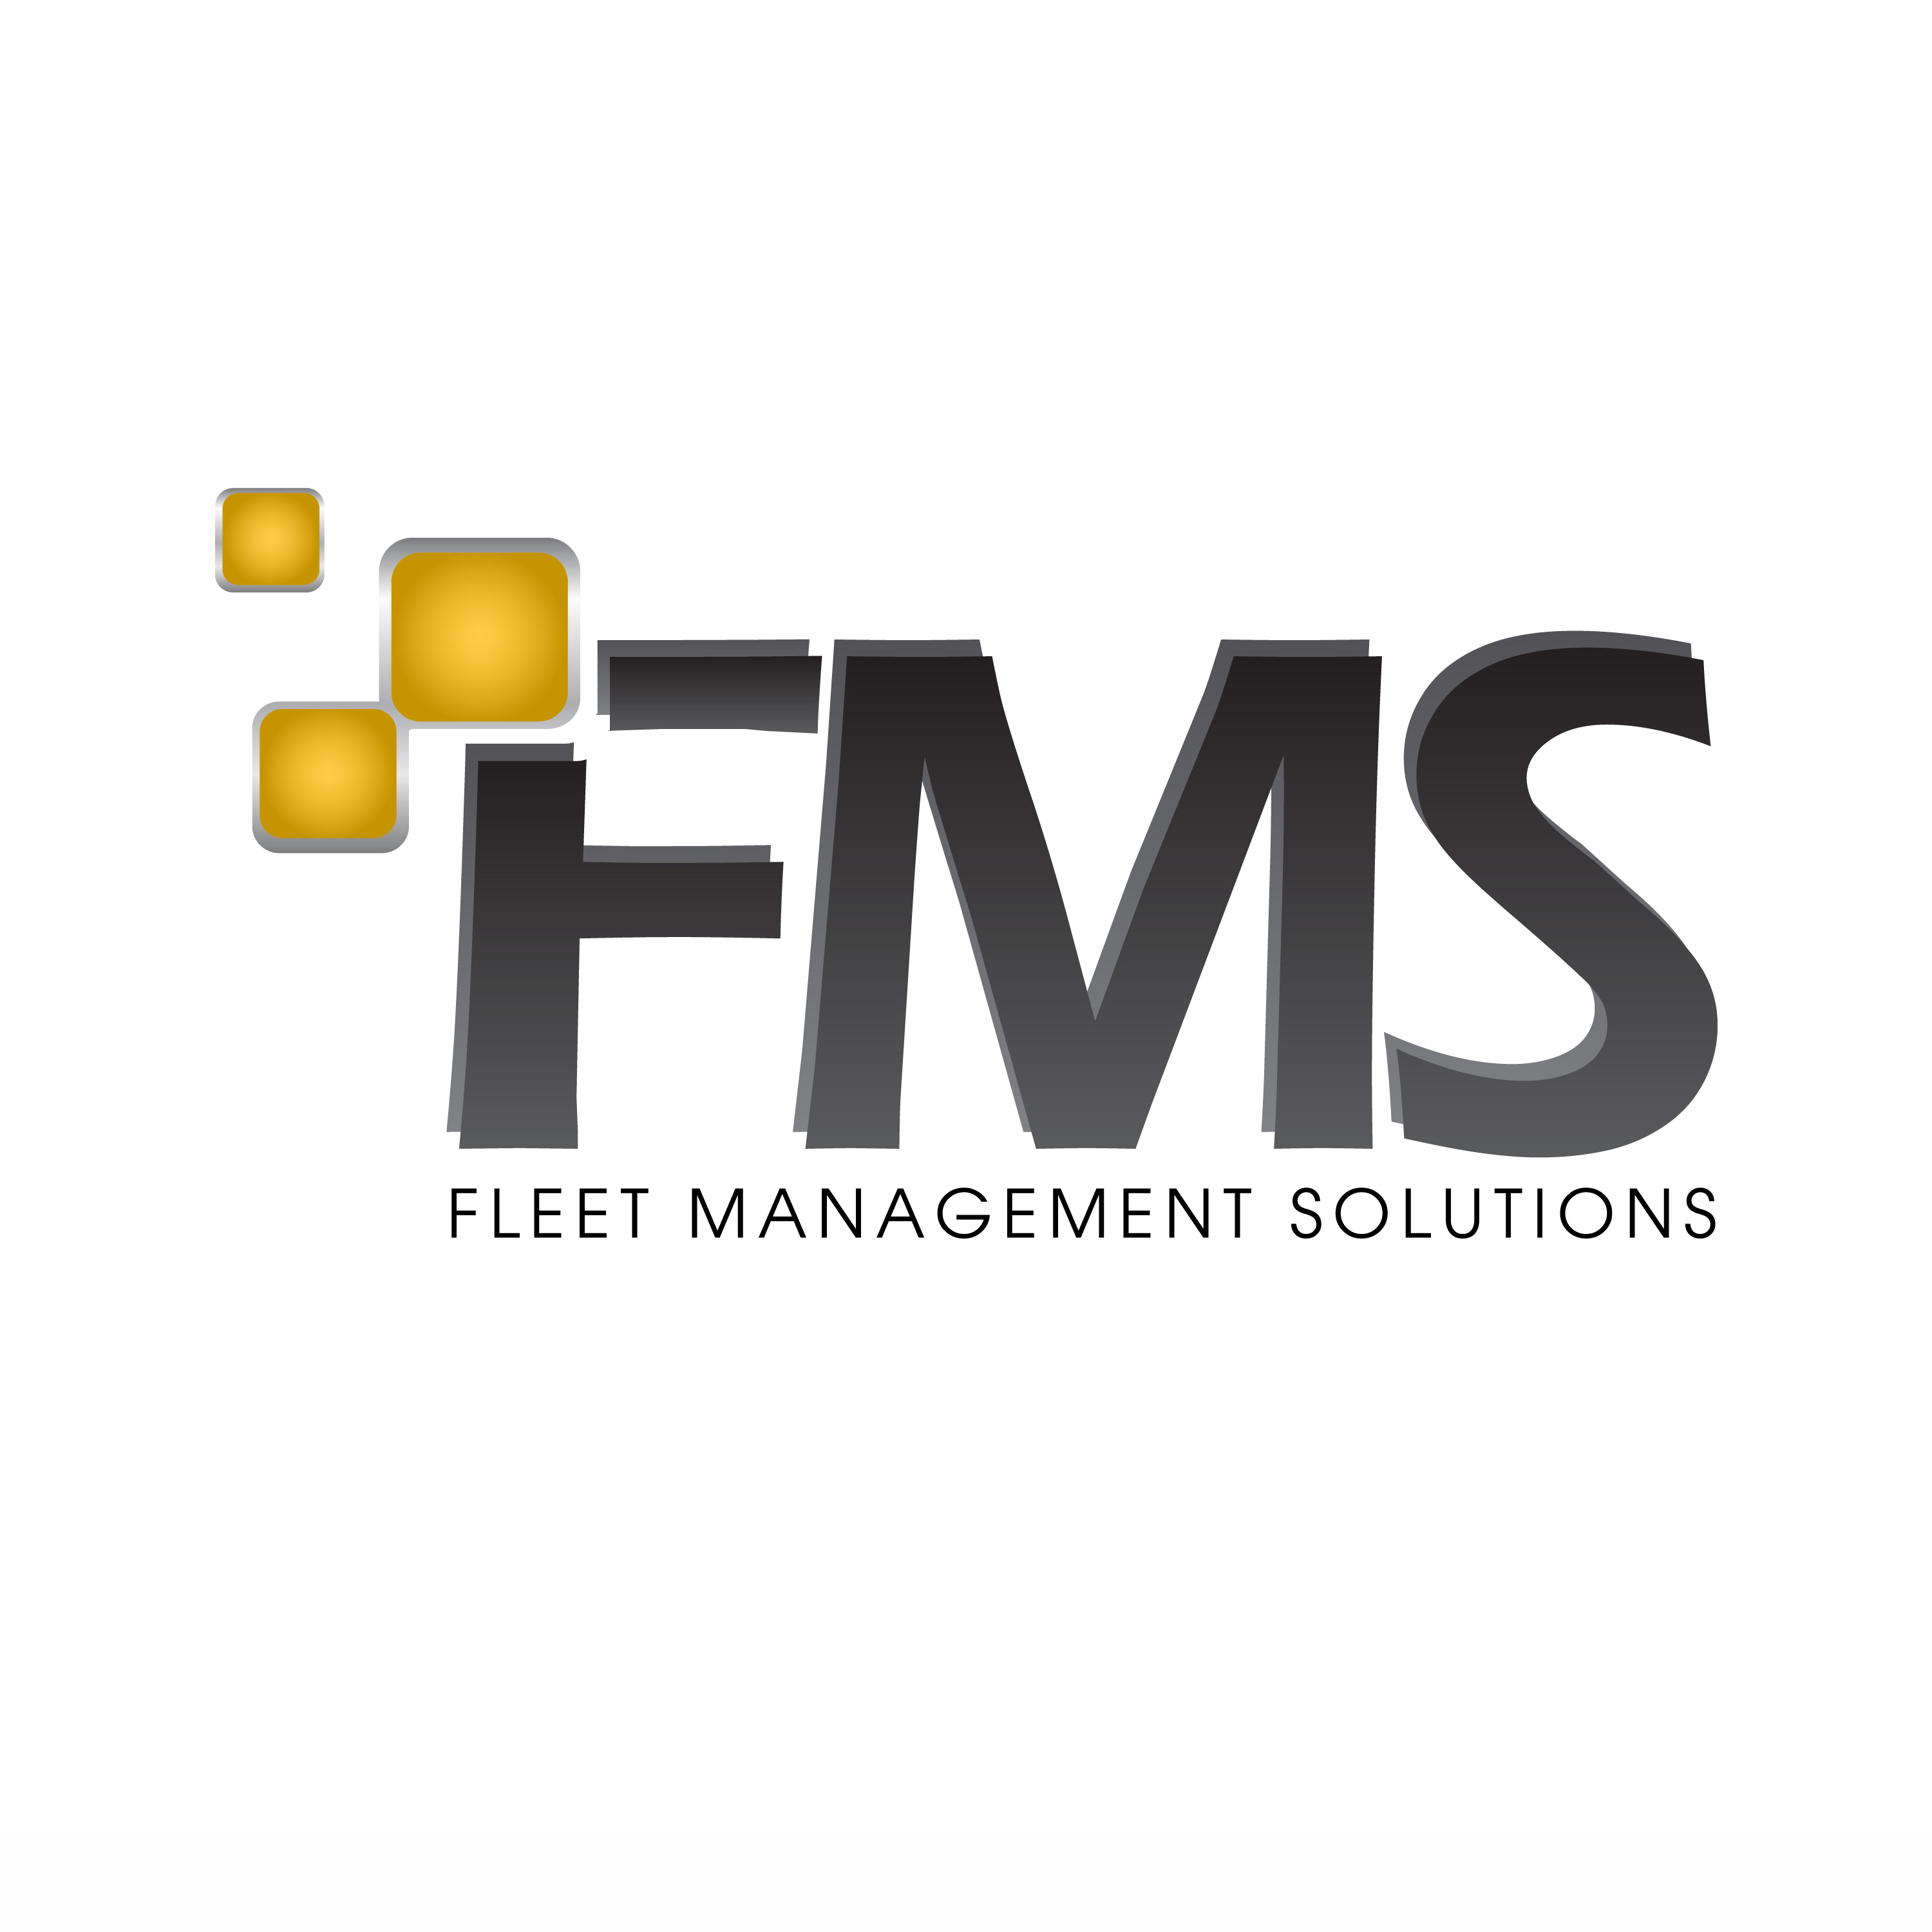 Fleet Management Solutions